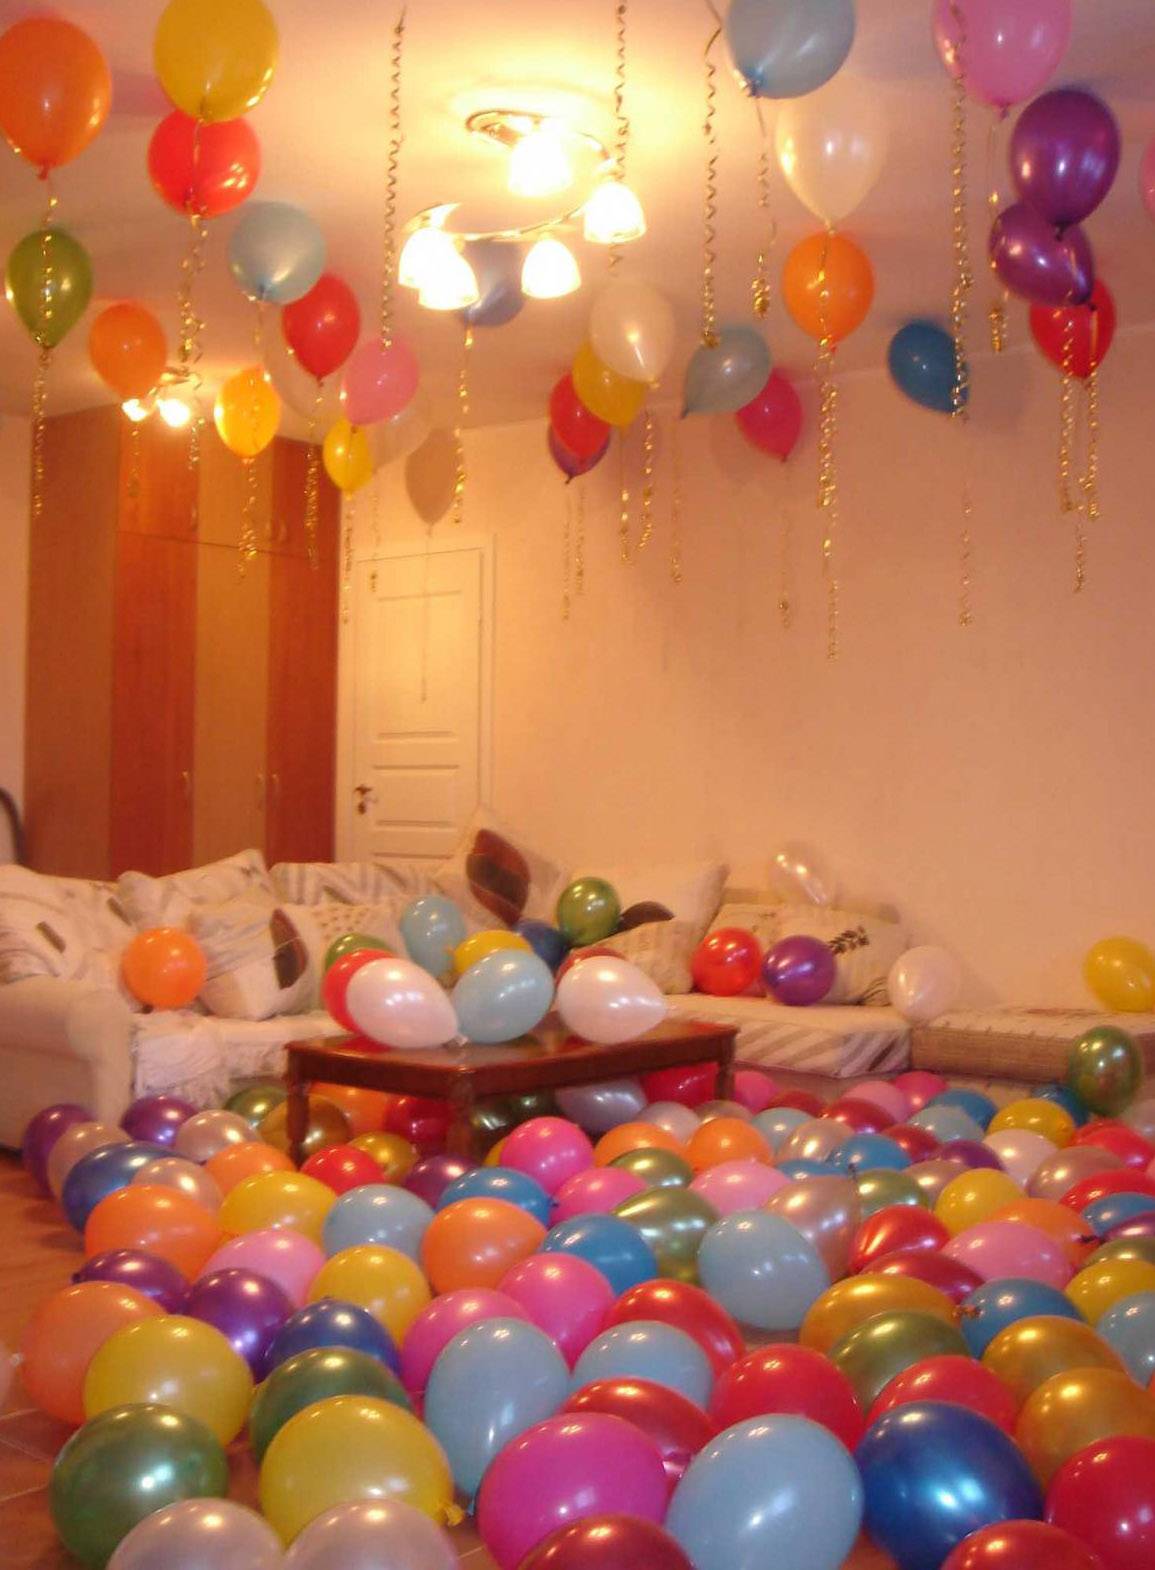 Как украсить комнату шарами (20 идей в картинках для домашнего праздника)